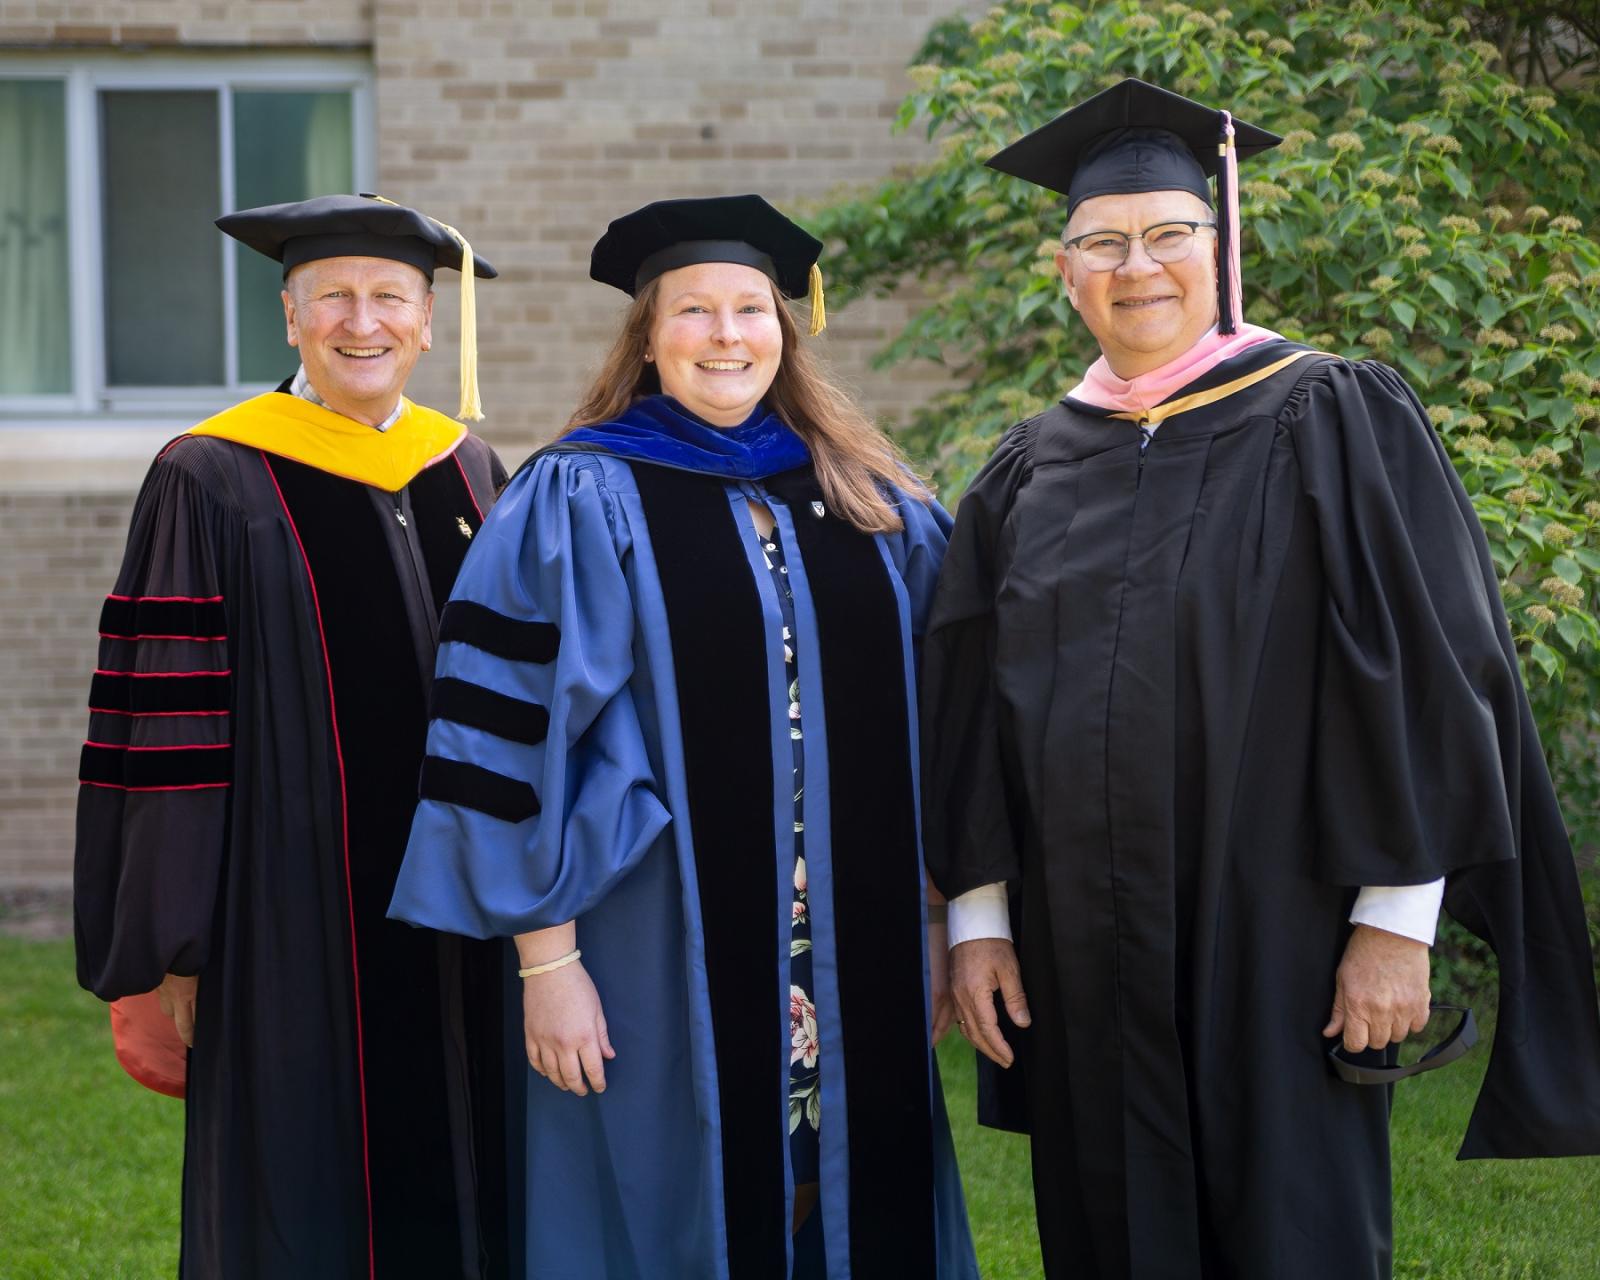 Faculty award winners, dress in regalia, include (from left) Matthew Stoneking, Kelly Culhane, and Matthew Michelic.